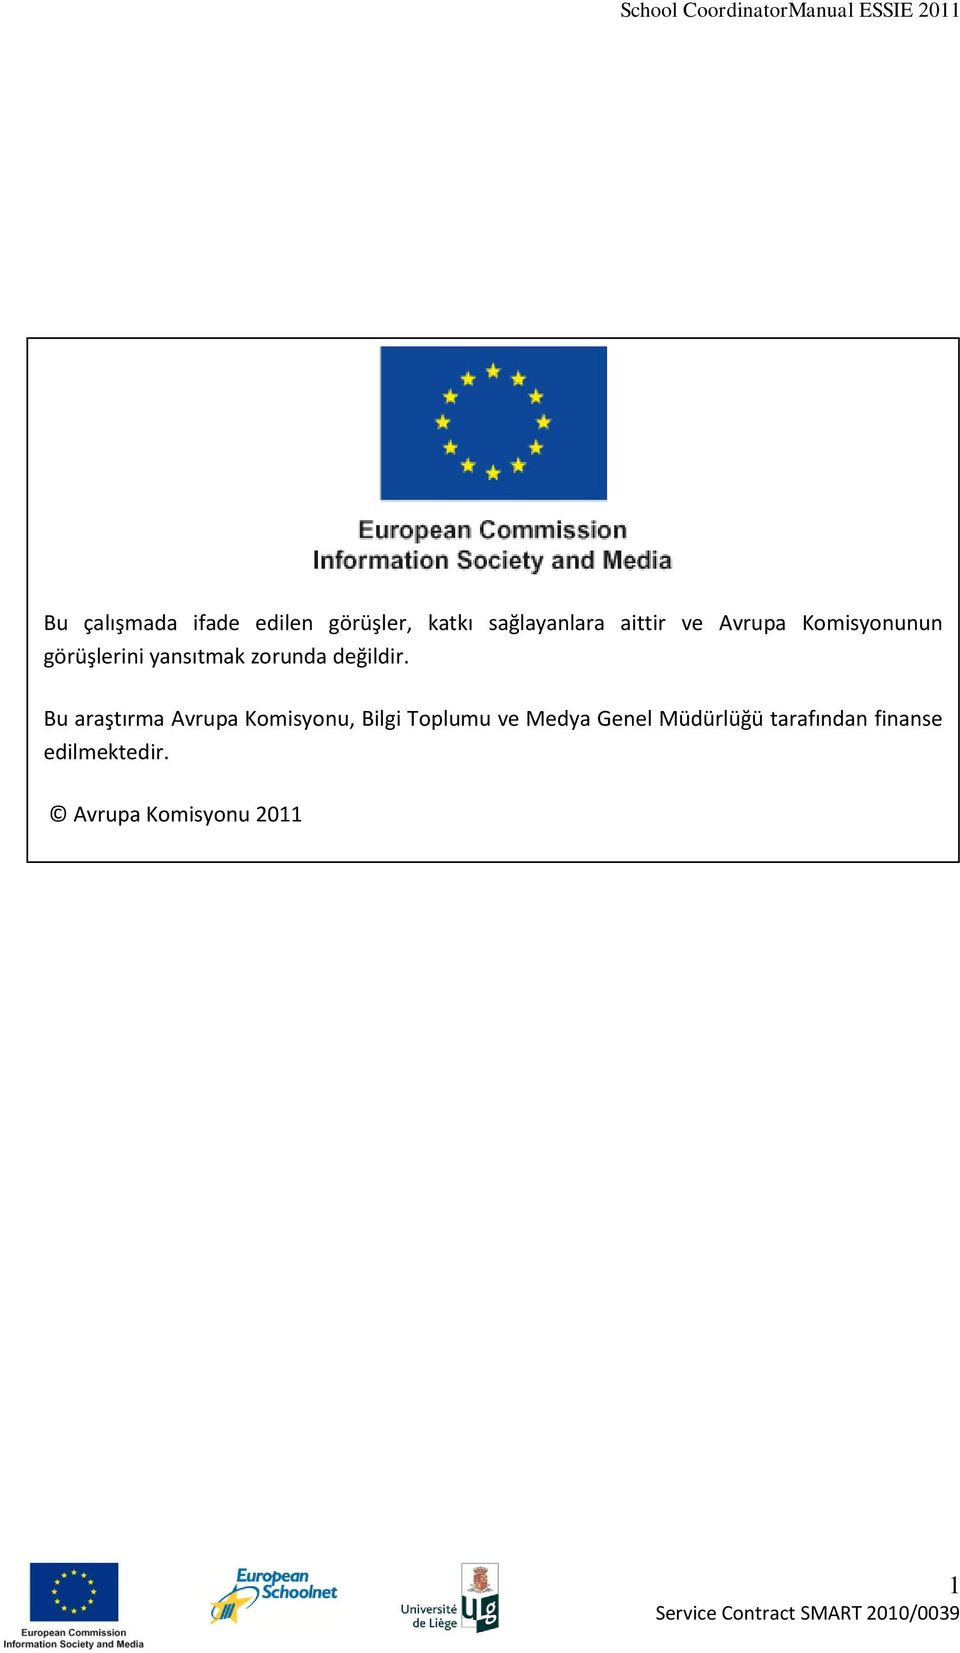 Bu araştırma Avrupa Komisyonu, Bilgi Toplumu ve Medya Genel